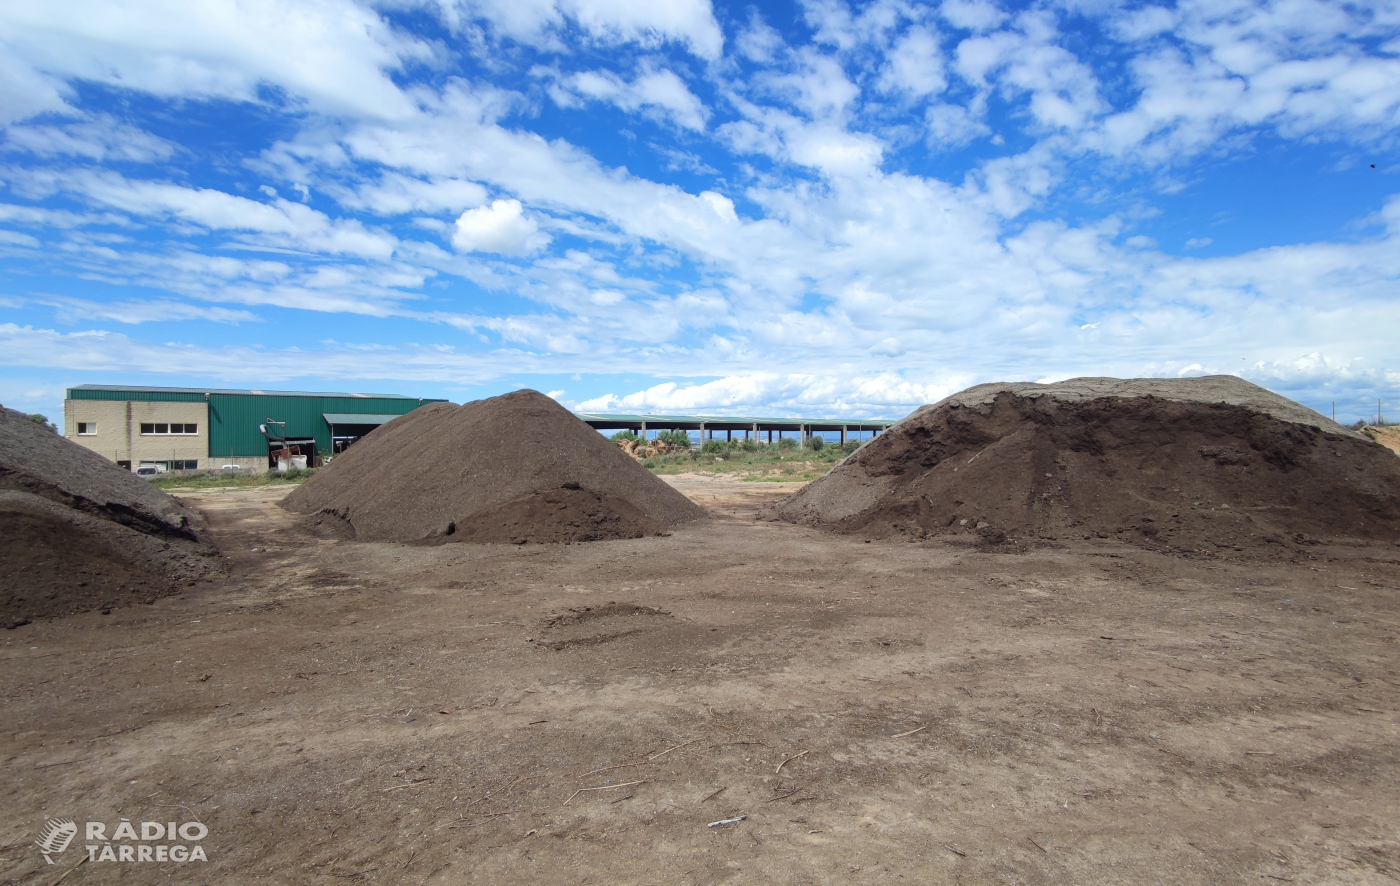 La planta de compostatge de l’Urgell va vendre 852 tones de compost l'any passat